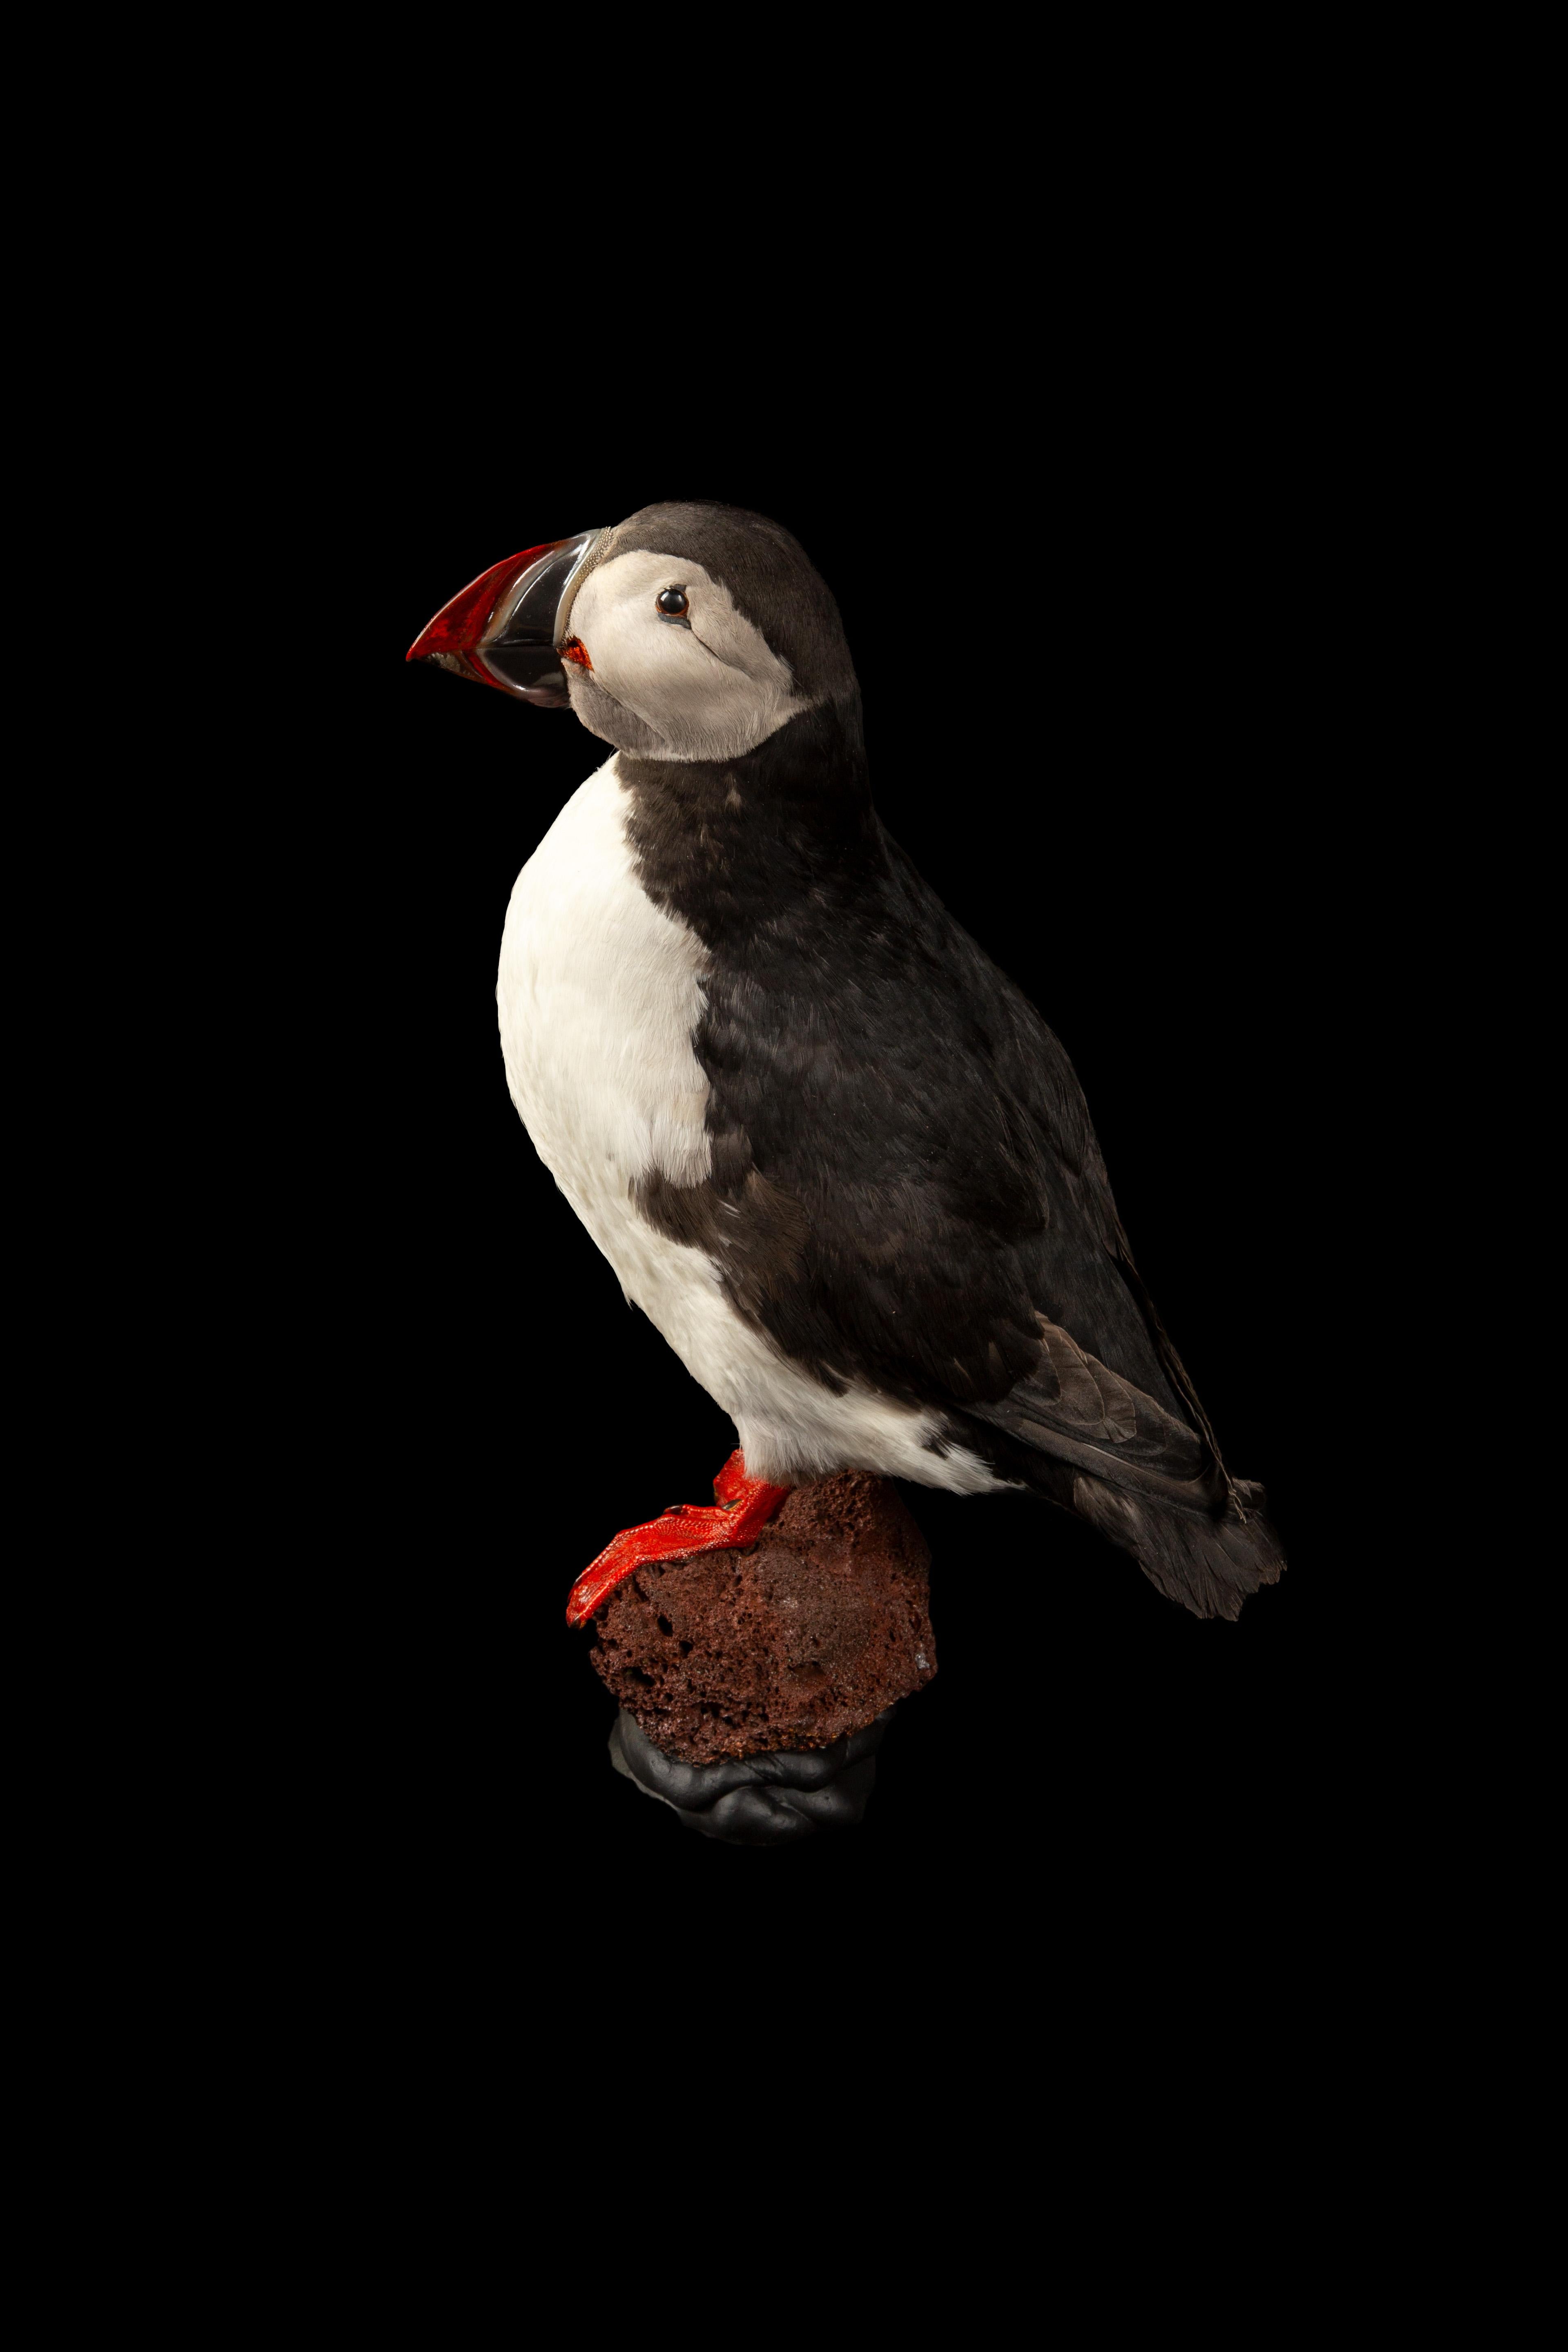 Taxidermie méticuleusement réalisée du macareux moine (Fratercula arctica), également connu sous le nom de macareux moine, un spécimen remarquable de la famille des pingouins. Cette création aviaire exquise met en valeur les caractéristiques